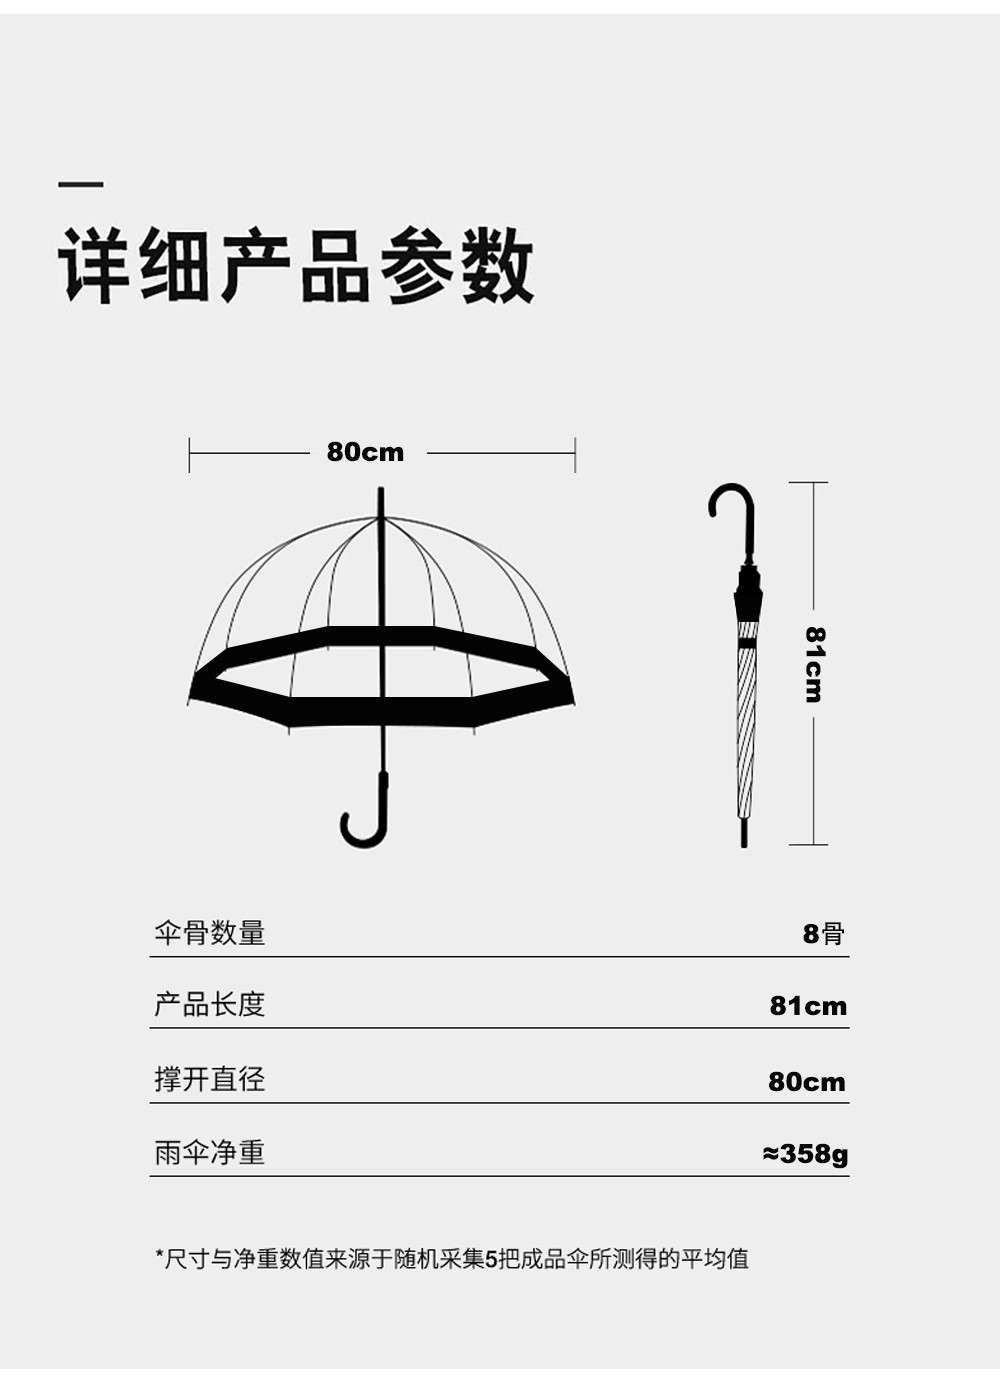 RST3466A接边雨伞长柄雨伞阿波罗拱形伞可爱蘑菇伞批发详情图10